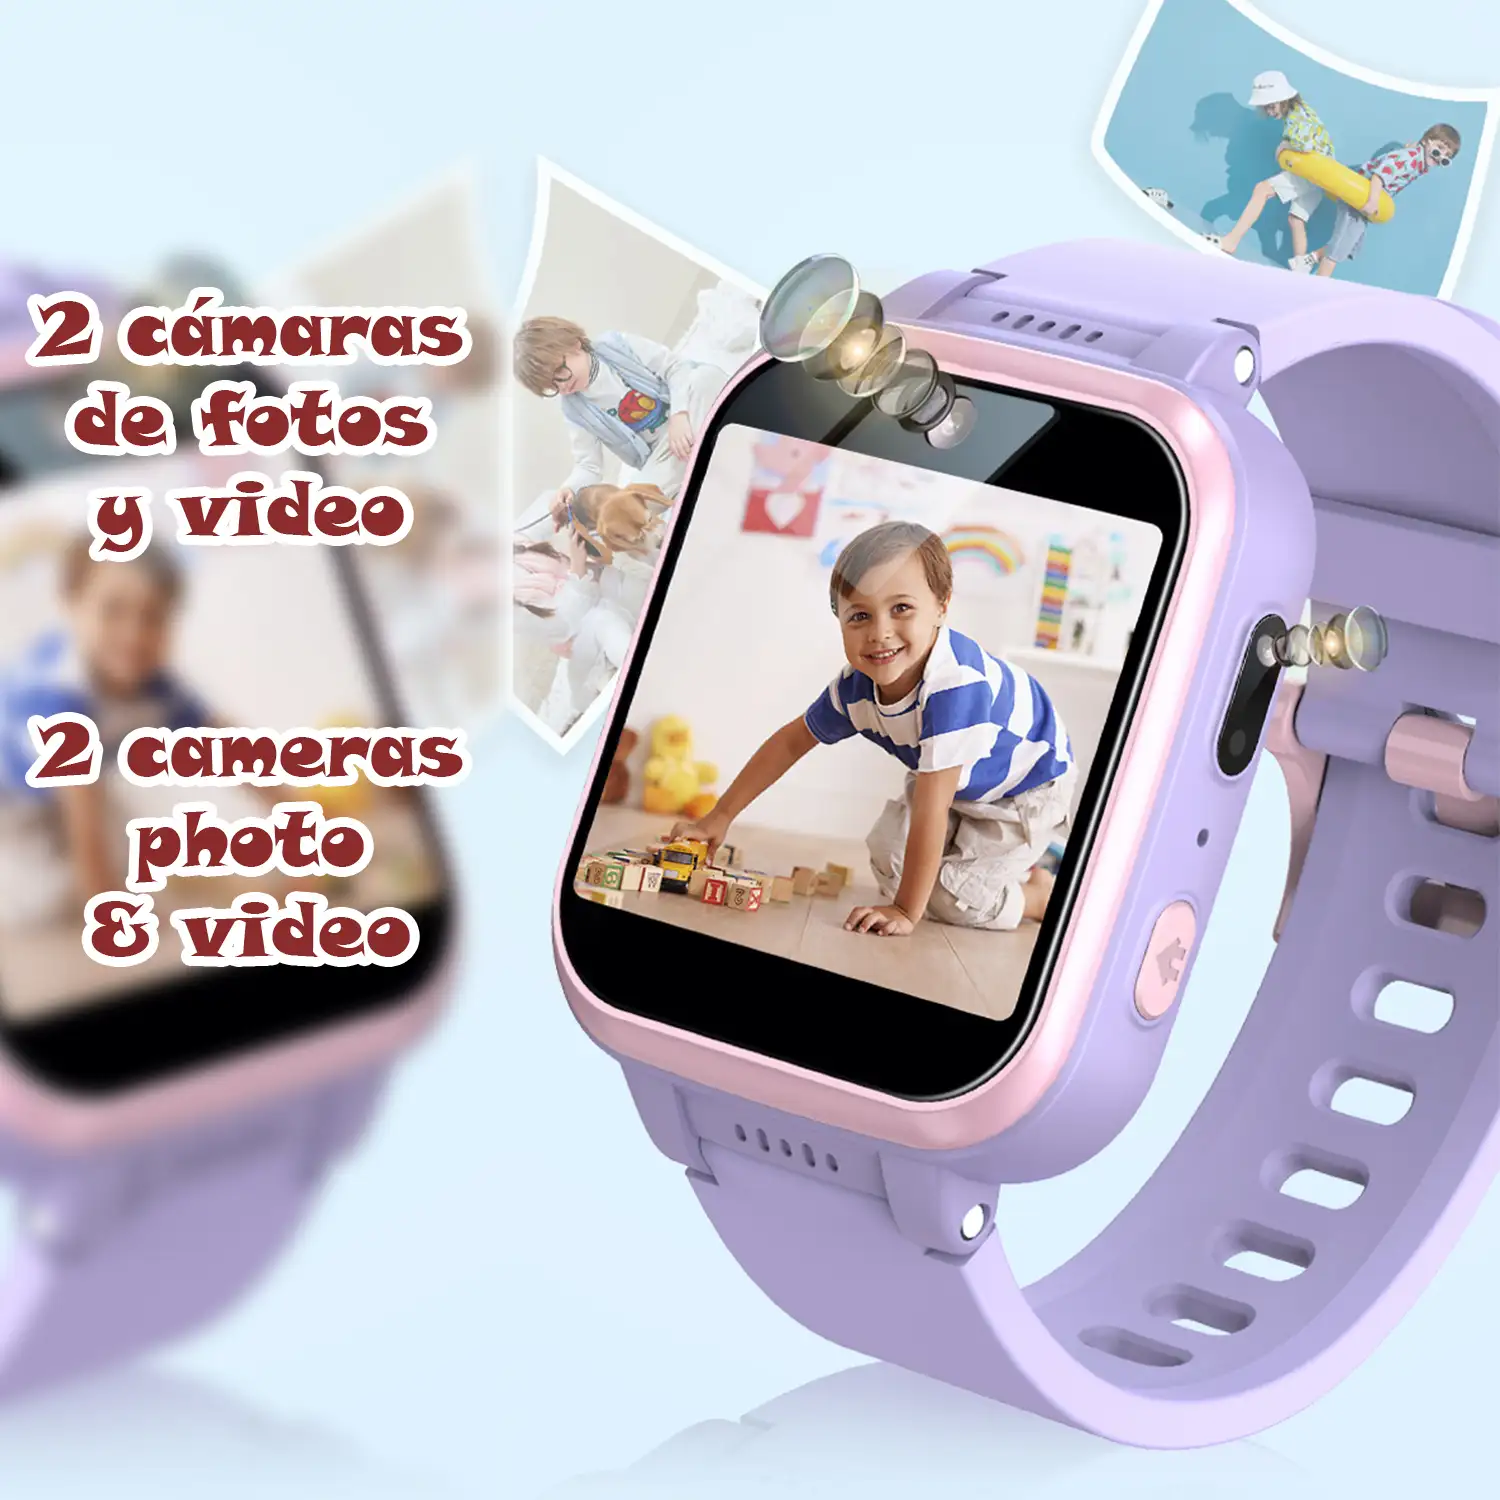 Smartwatch infantil Y90 con cámara de fotos y video, 6 juegos, grabadora de voz y reproductor de música.